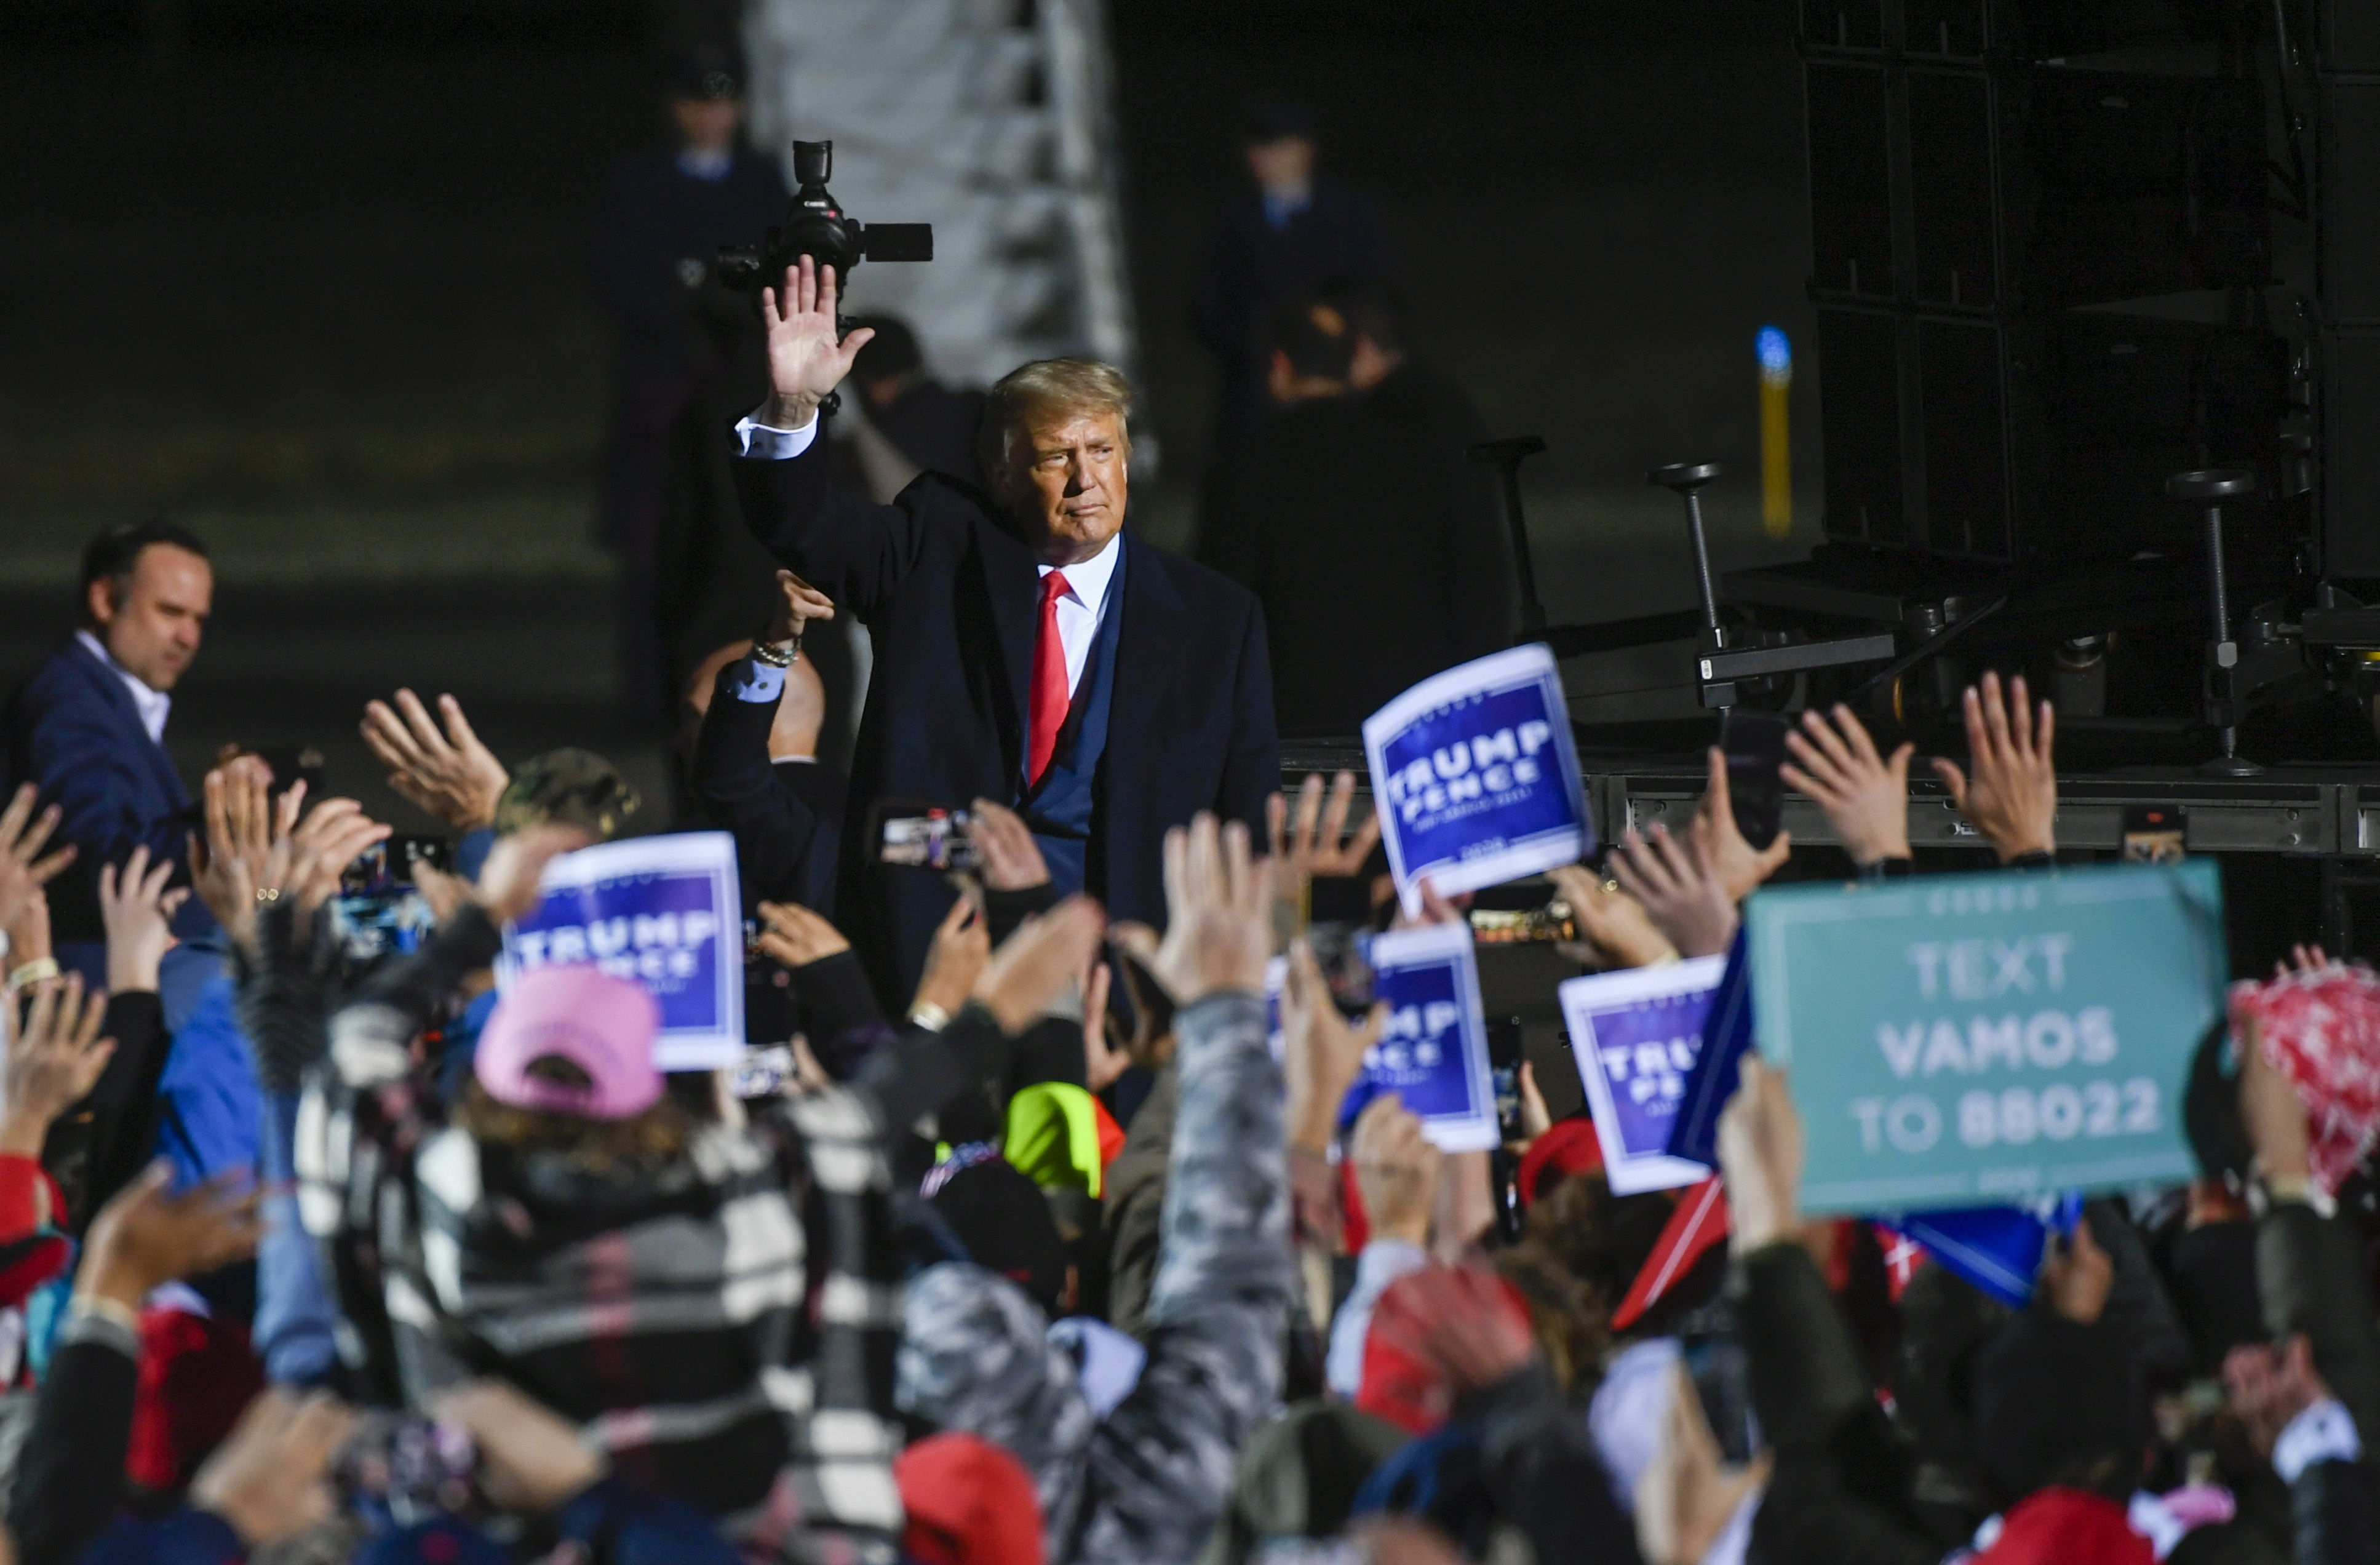 El presidente Donald Trump saluda a seguidores después de hablar en un mítin en Minnesota el 30 de septiembre pasado, una de sus últimas apariciones públicas antes de ser diagnosticado con covid-19. (Foto Prensa Libre: EFE)